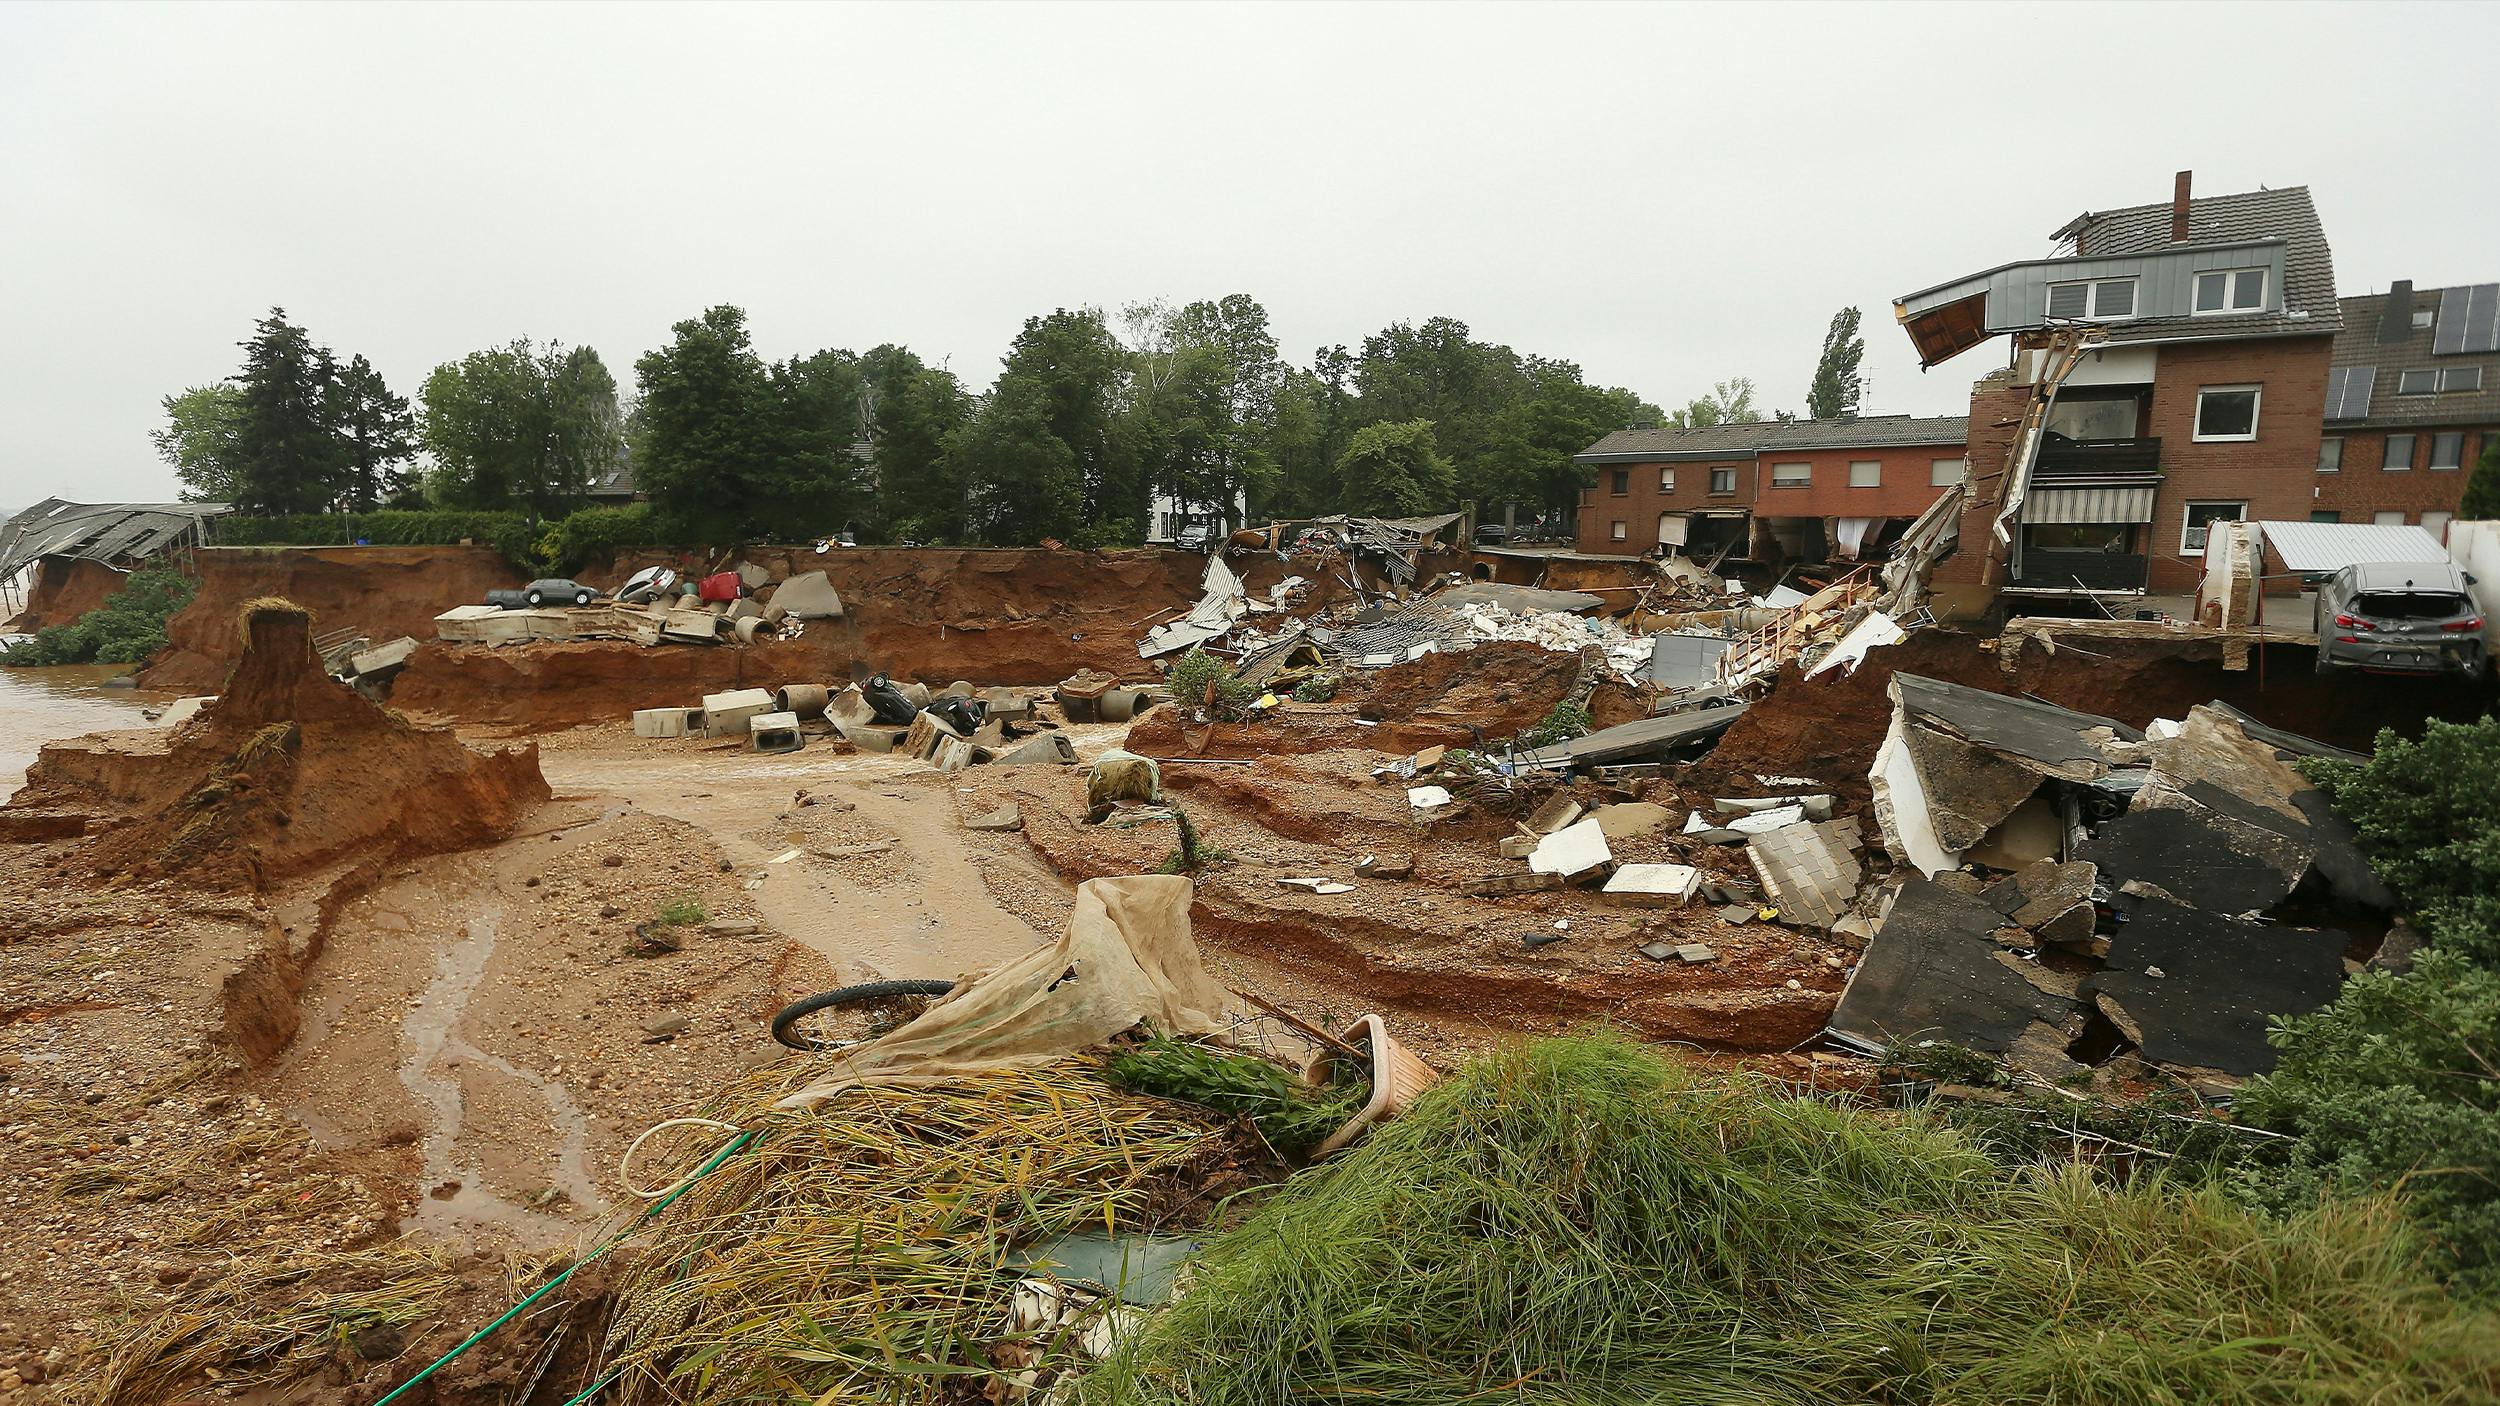 Eine Szene aus dem Ahrtal von vor einem Jahr. Durch die Flut gab es einen Erdrutsch, rechts im Bild sieht man die Trümmer eines betroffenen Hauses. In der Ferne sieht man mehrere Autos, die abgerutscht sind. 